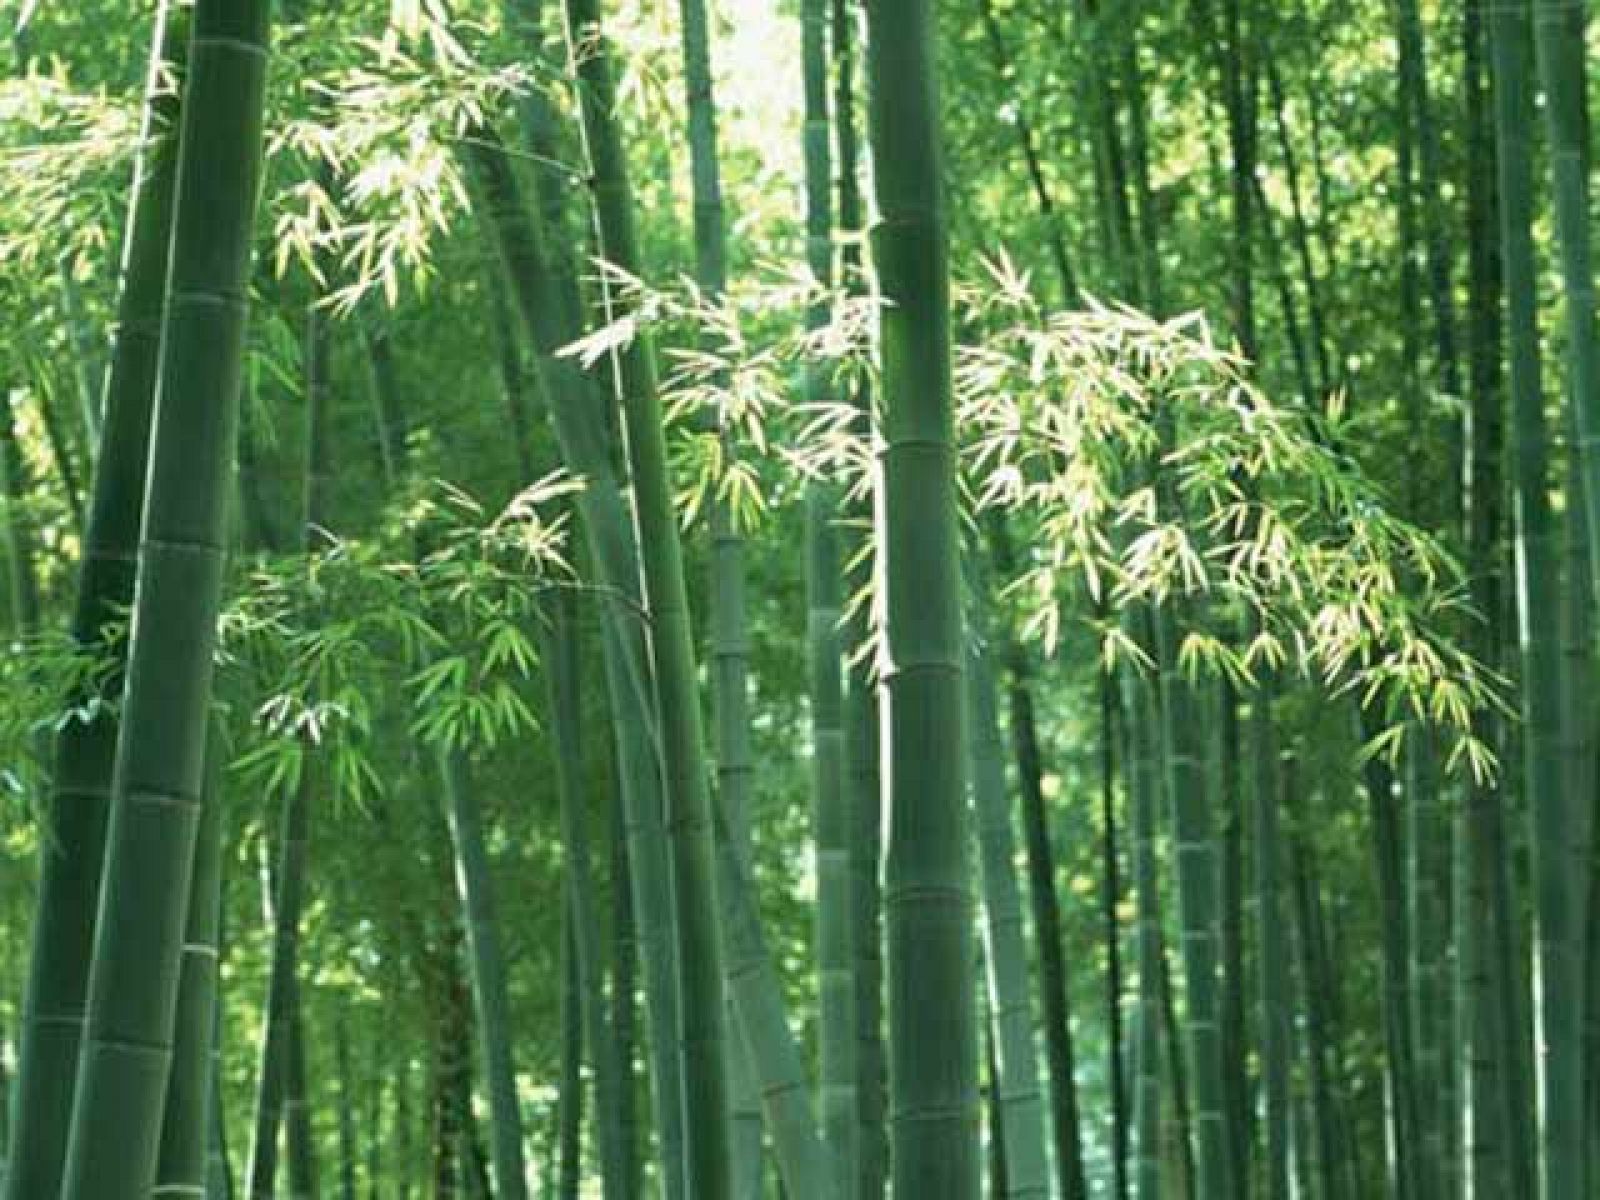 On Off: En China apuestan por el bambú